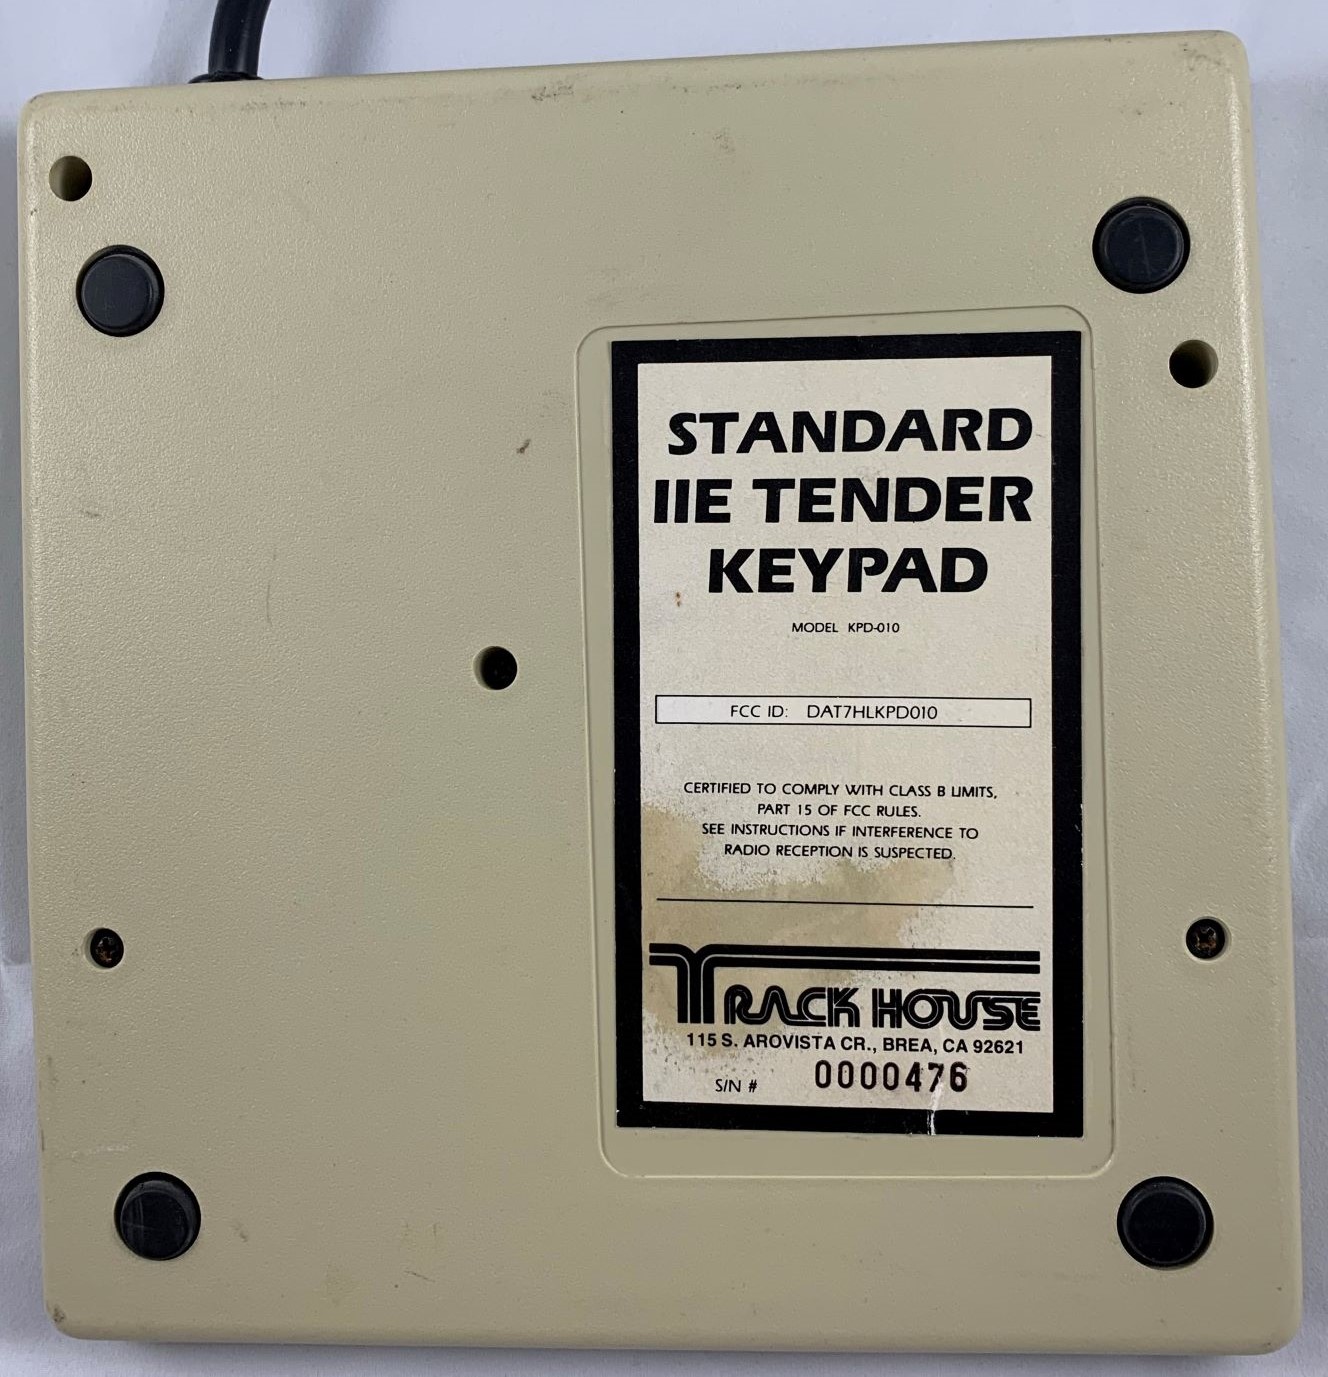 Standard-IIe-Tender-label.jpg